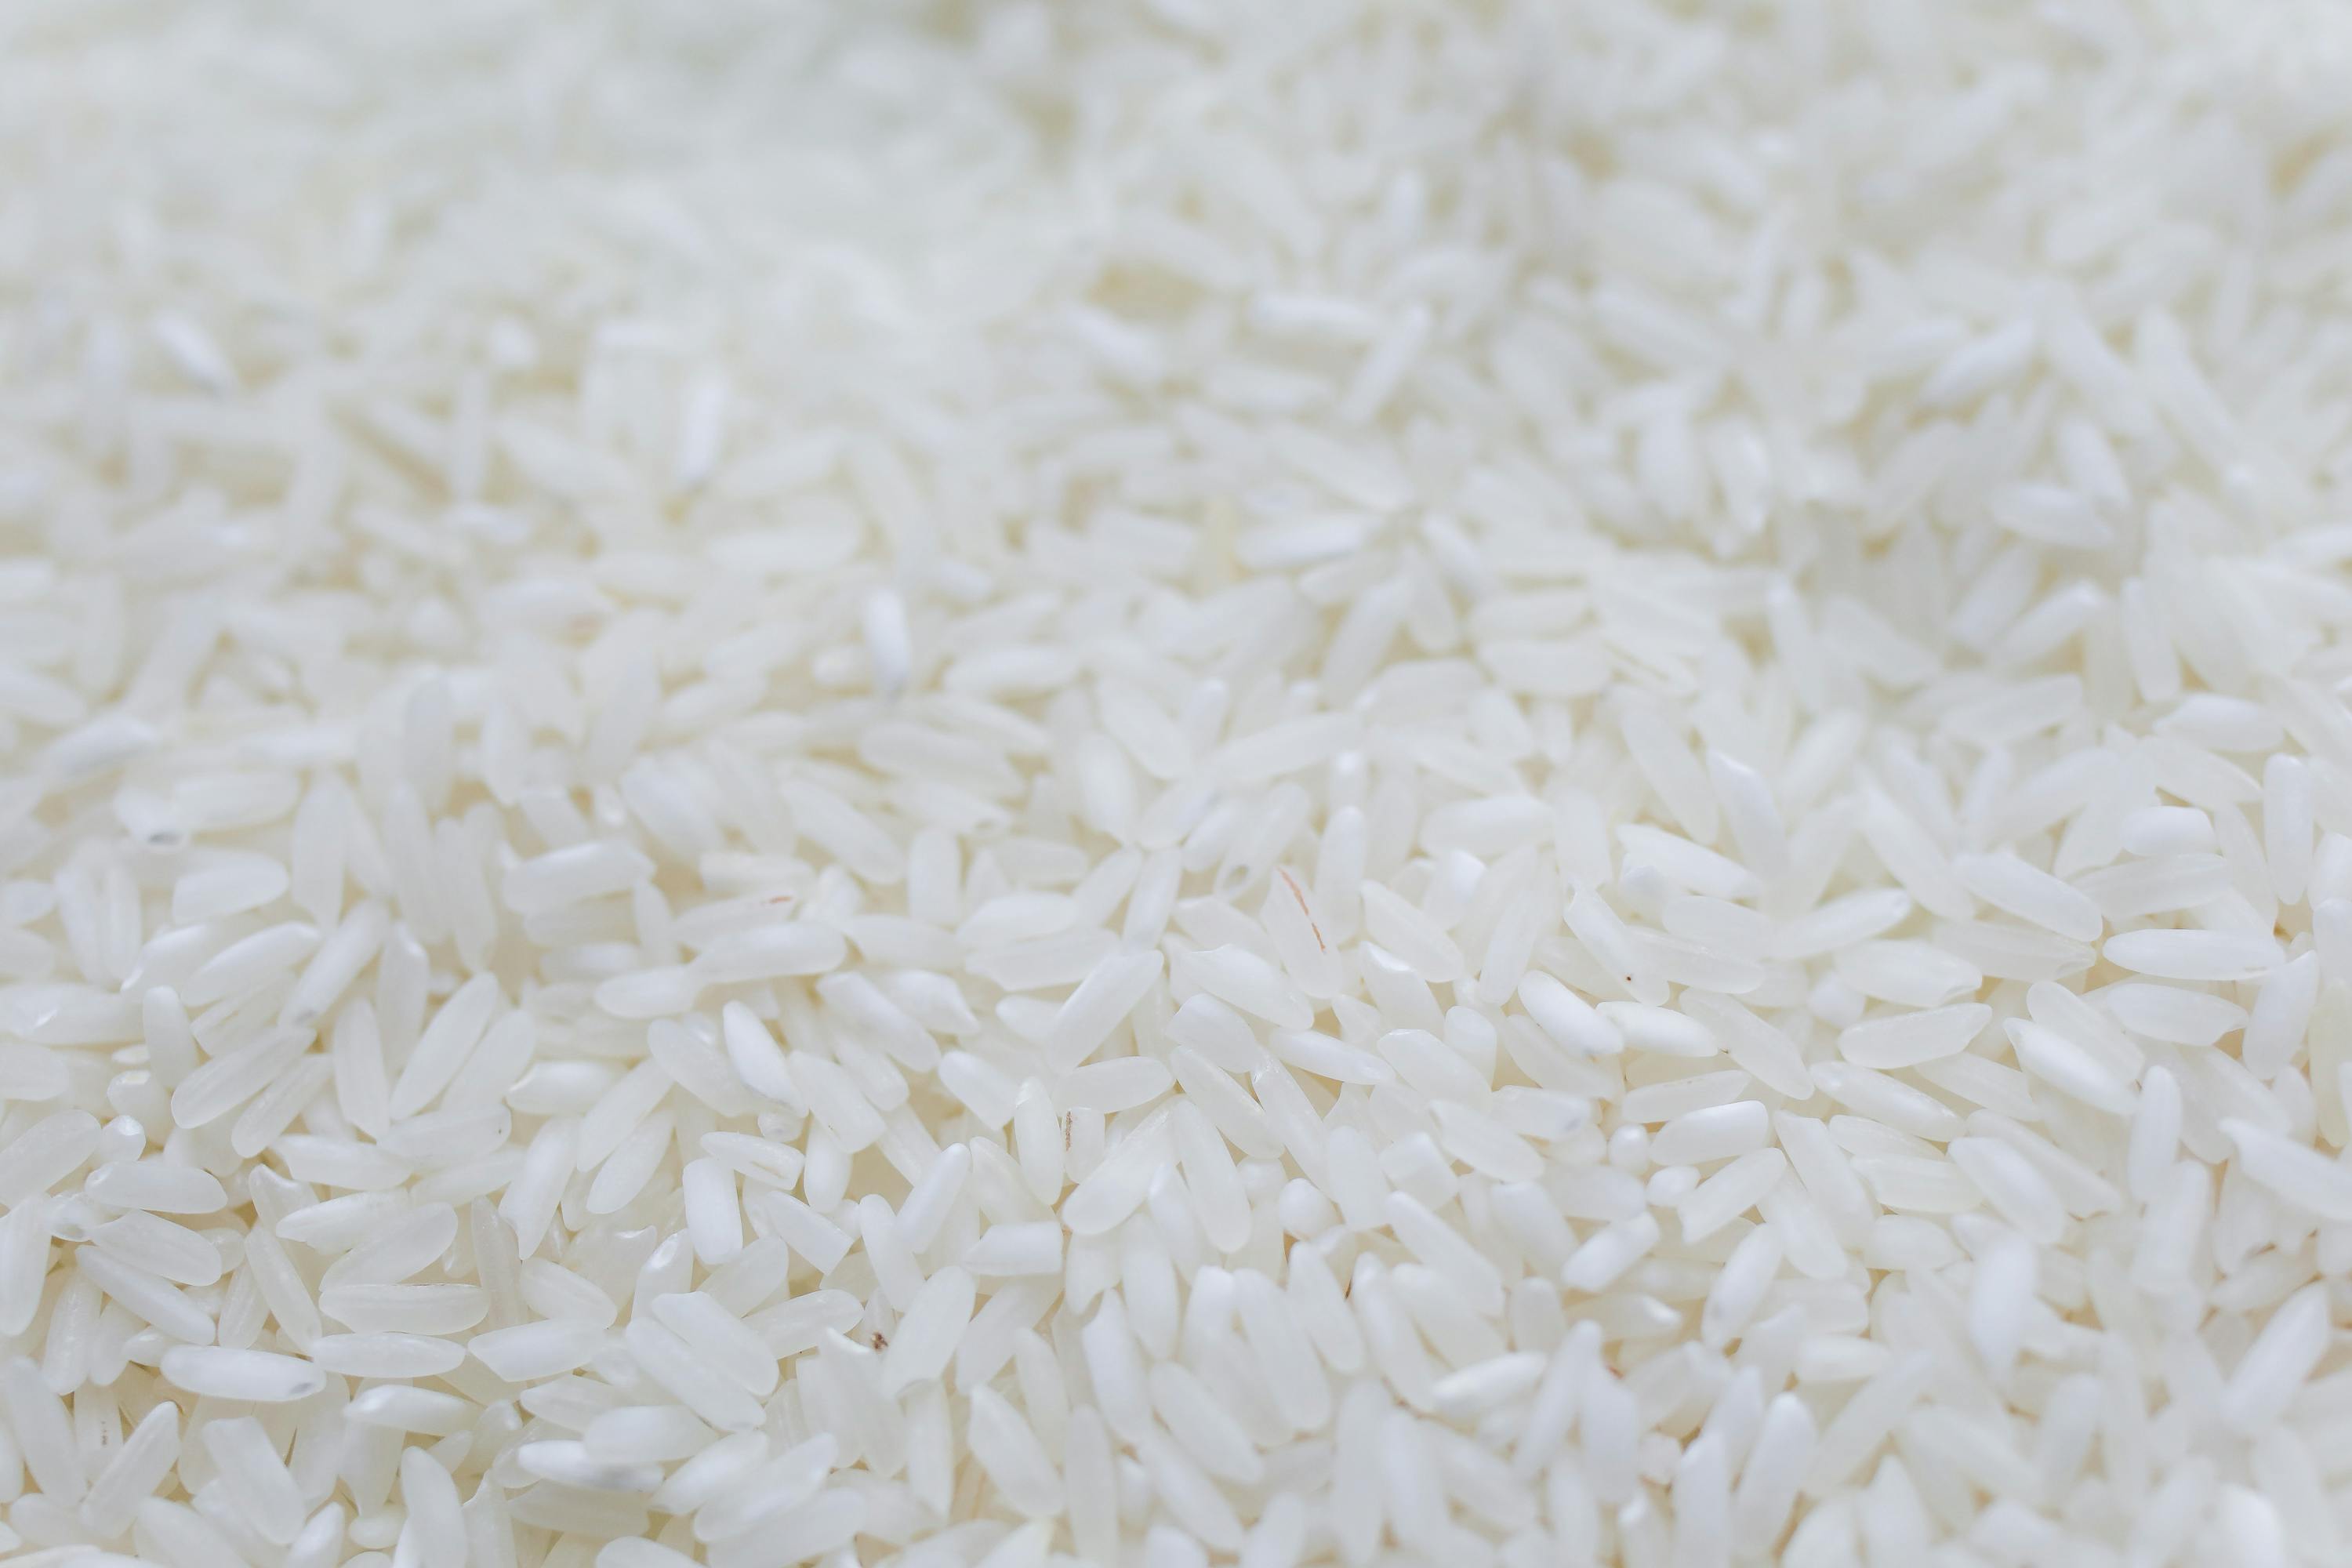 White Rice Images  Free Download on Freepik